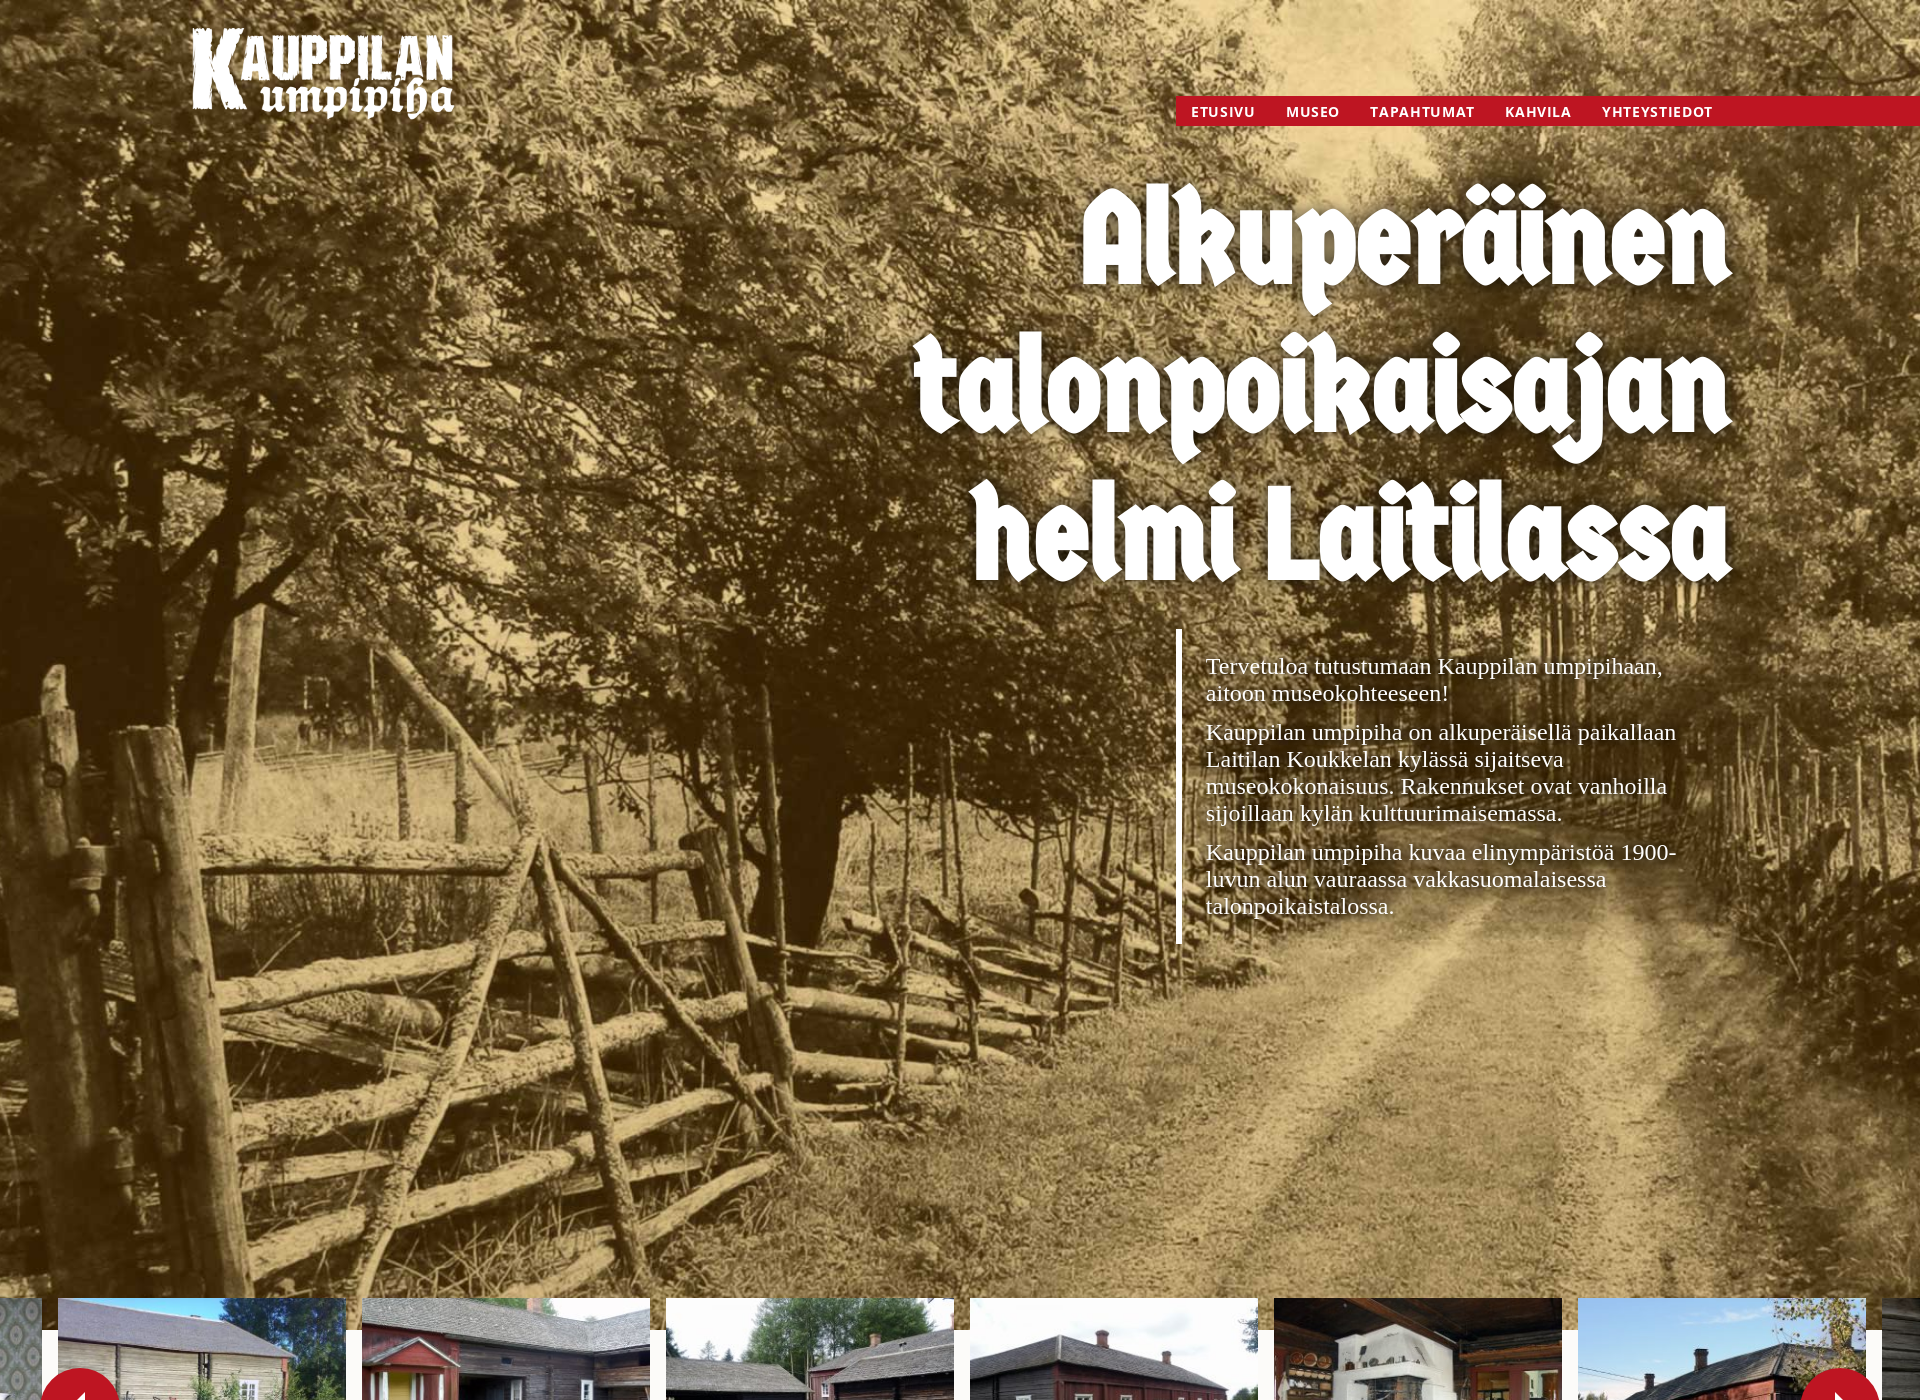 Screenshot for kauppilanumpipiha.fi